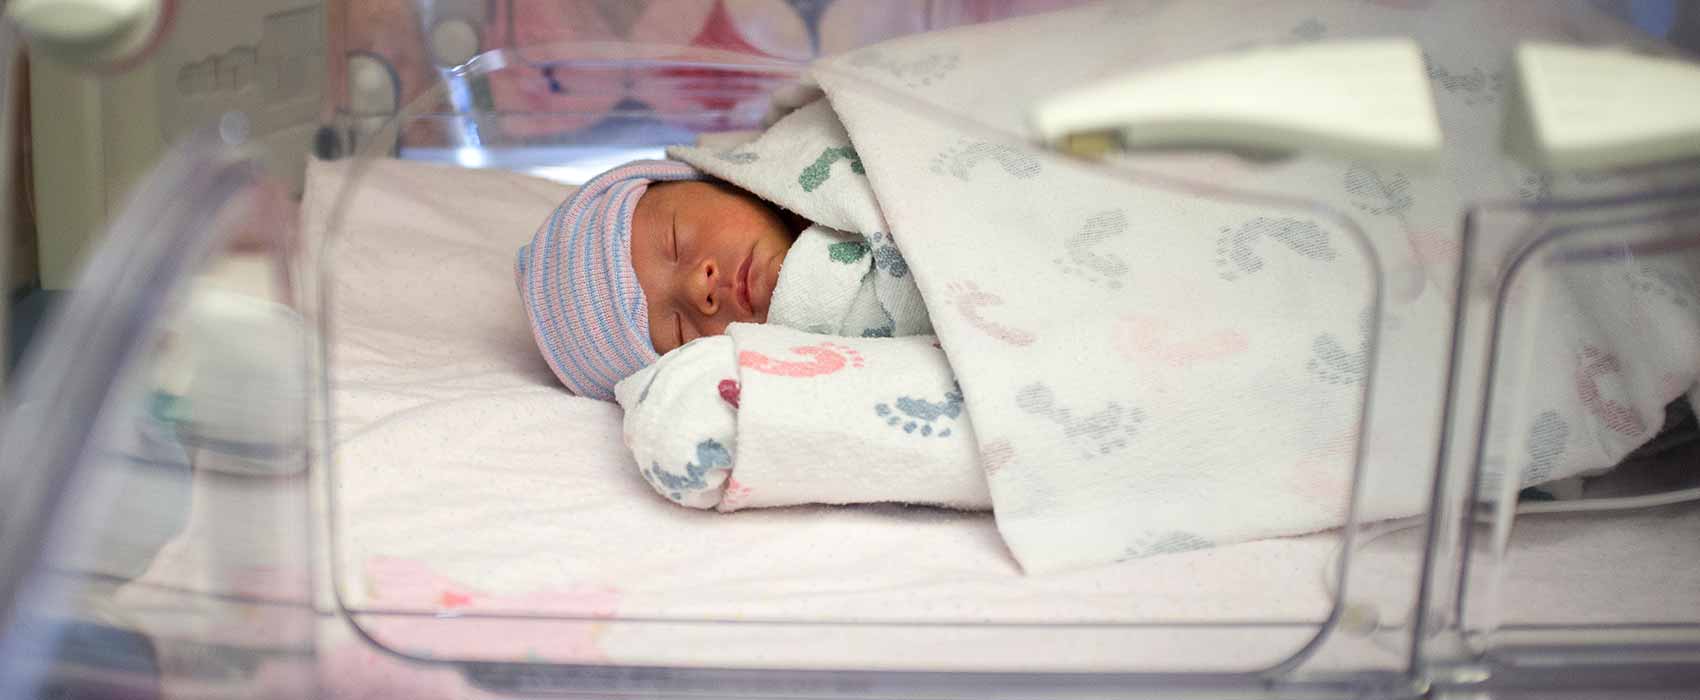 Bebé durmiendo en una unidad de cuidados intensivos neonatales (UCIN).